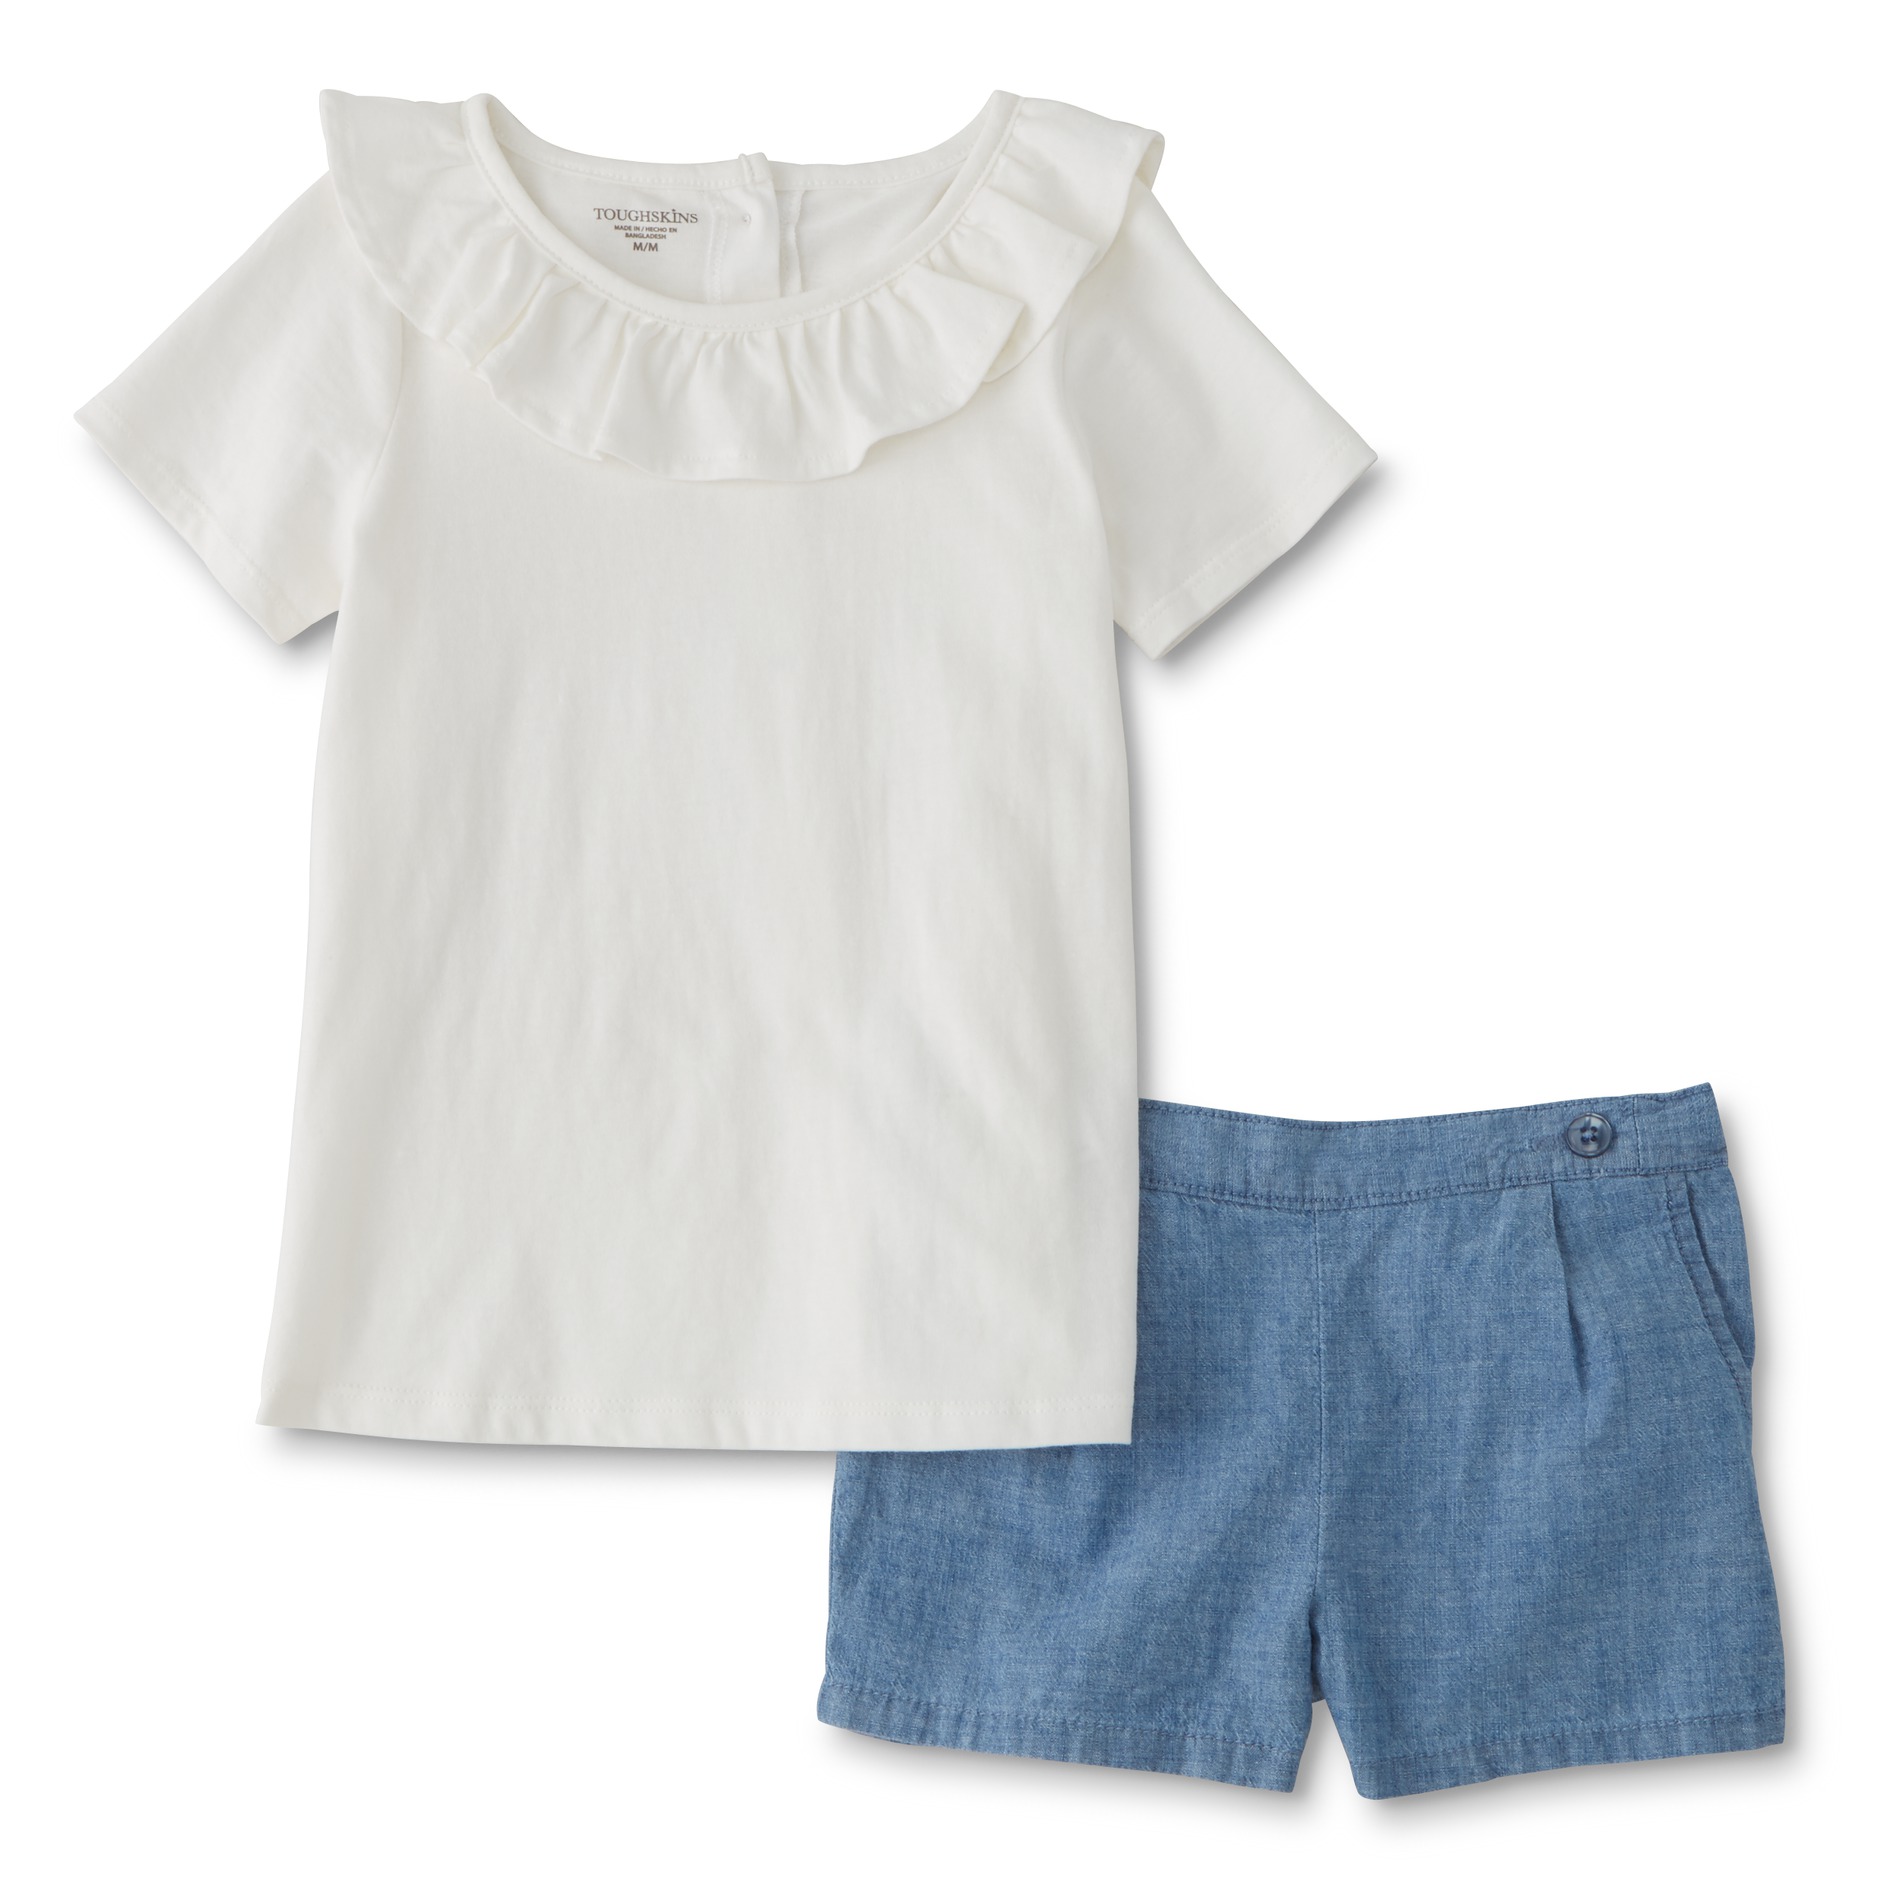 Toughskins Infant & Toddler Girls' T-Shirt & Shorts